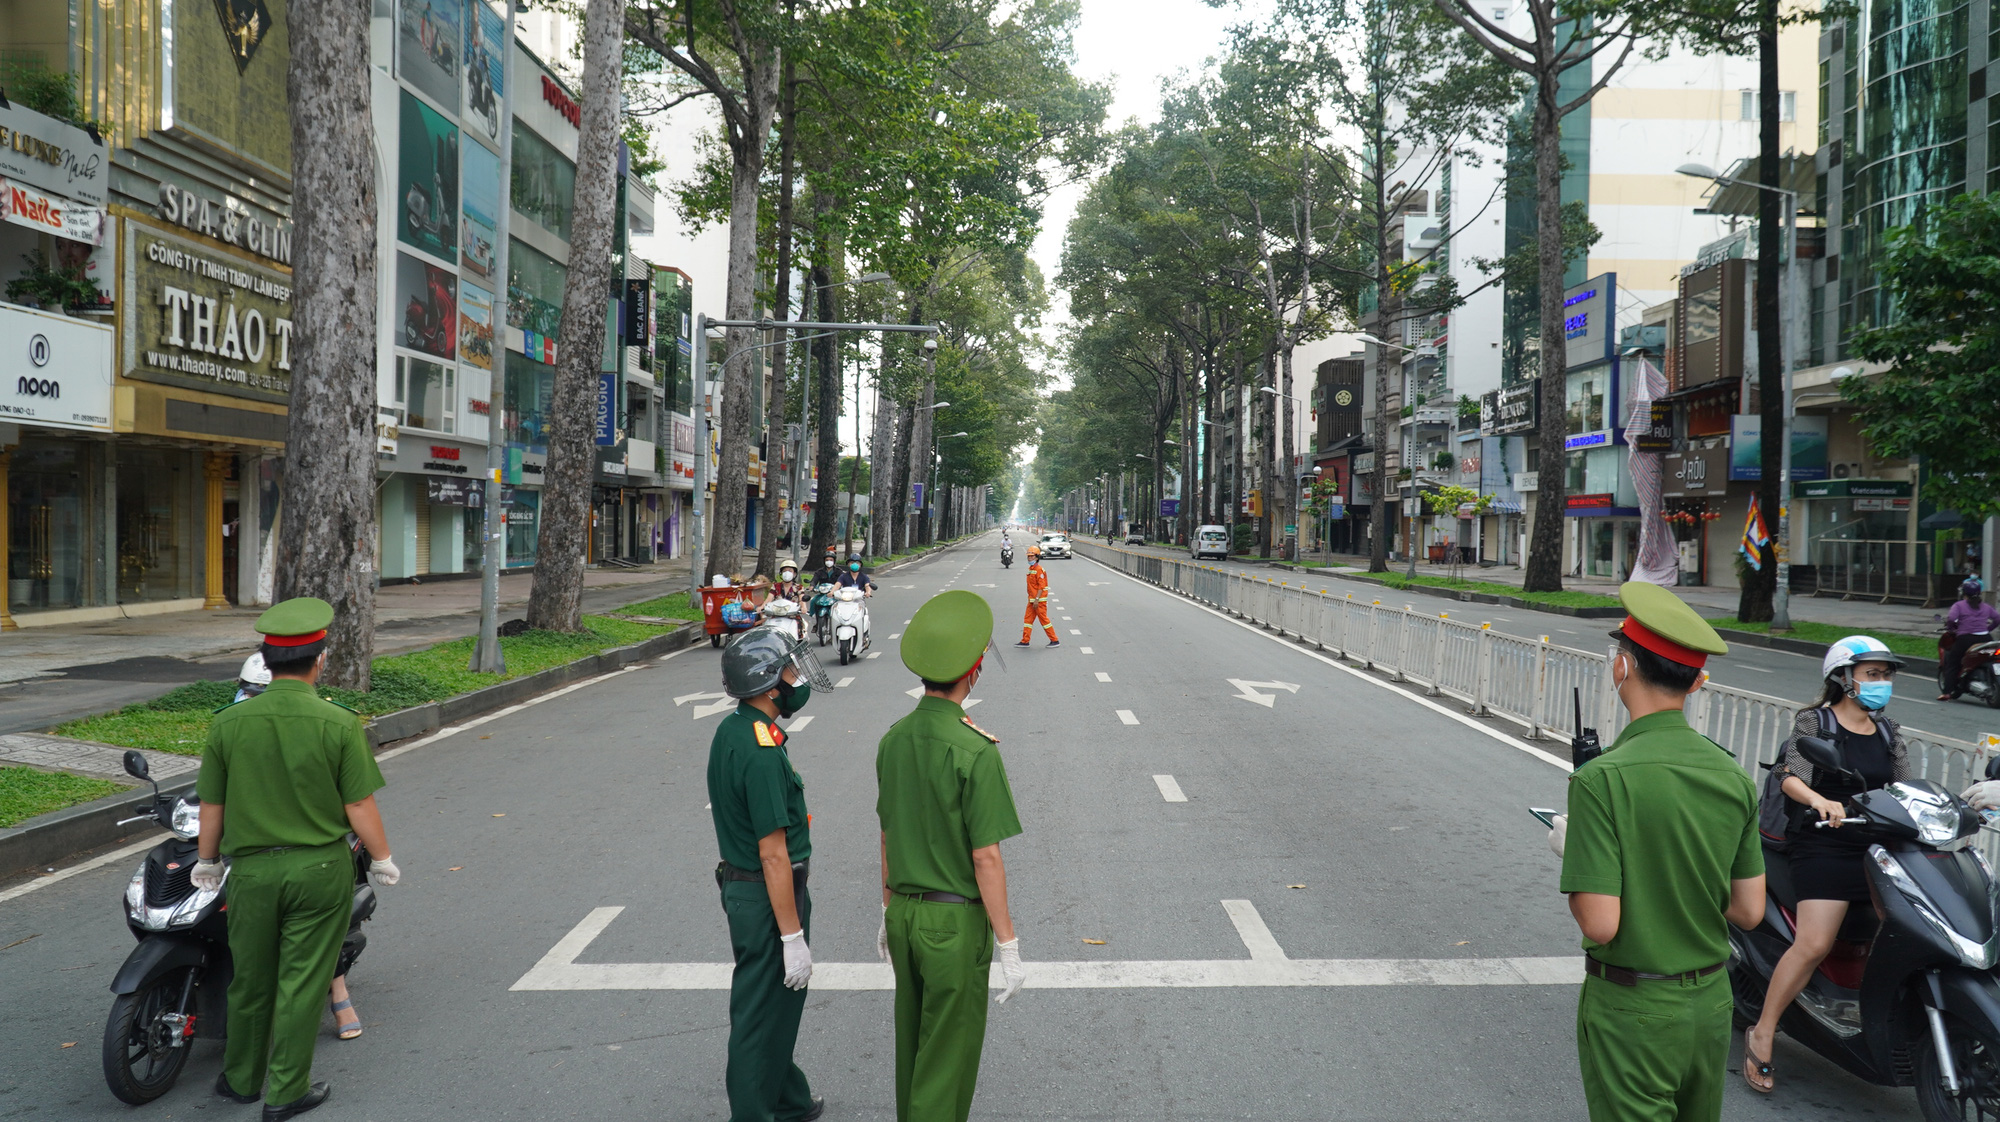 Khám phá thế giới Đêm Sài Gòn đầy màu sắc và sôi động chỉ bằng một bước chân. Kiểm soát đường phố với các địa điểm trải nghiệm mới nhất như phố đi bộ Nguyễn Huệ hay phố đi bộ Bùi Viện sẽ khiến bạn thích thú và ấn tượng.